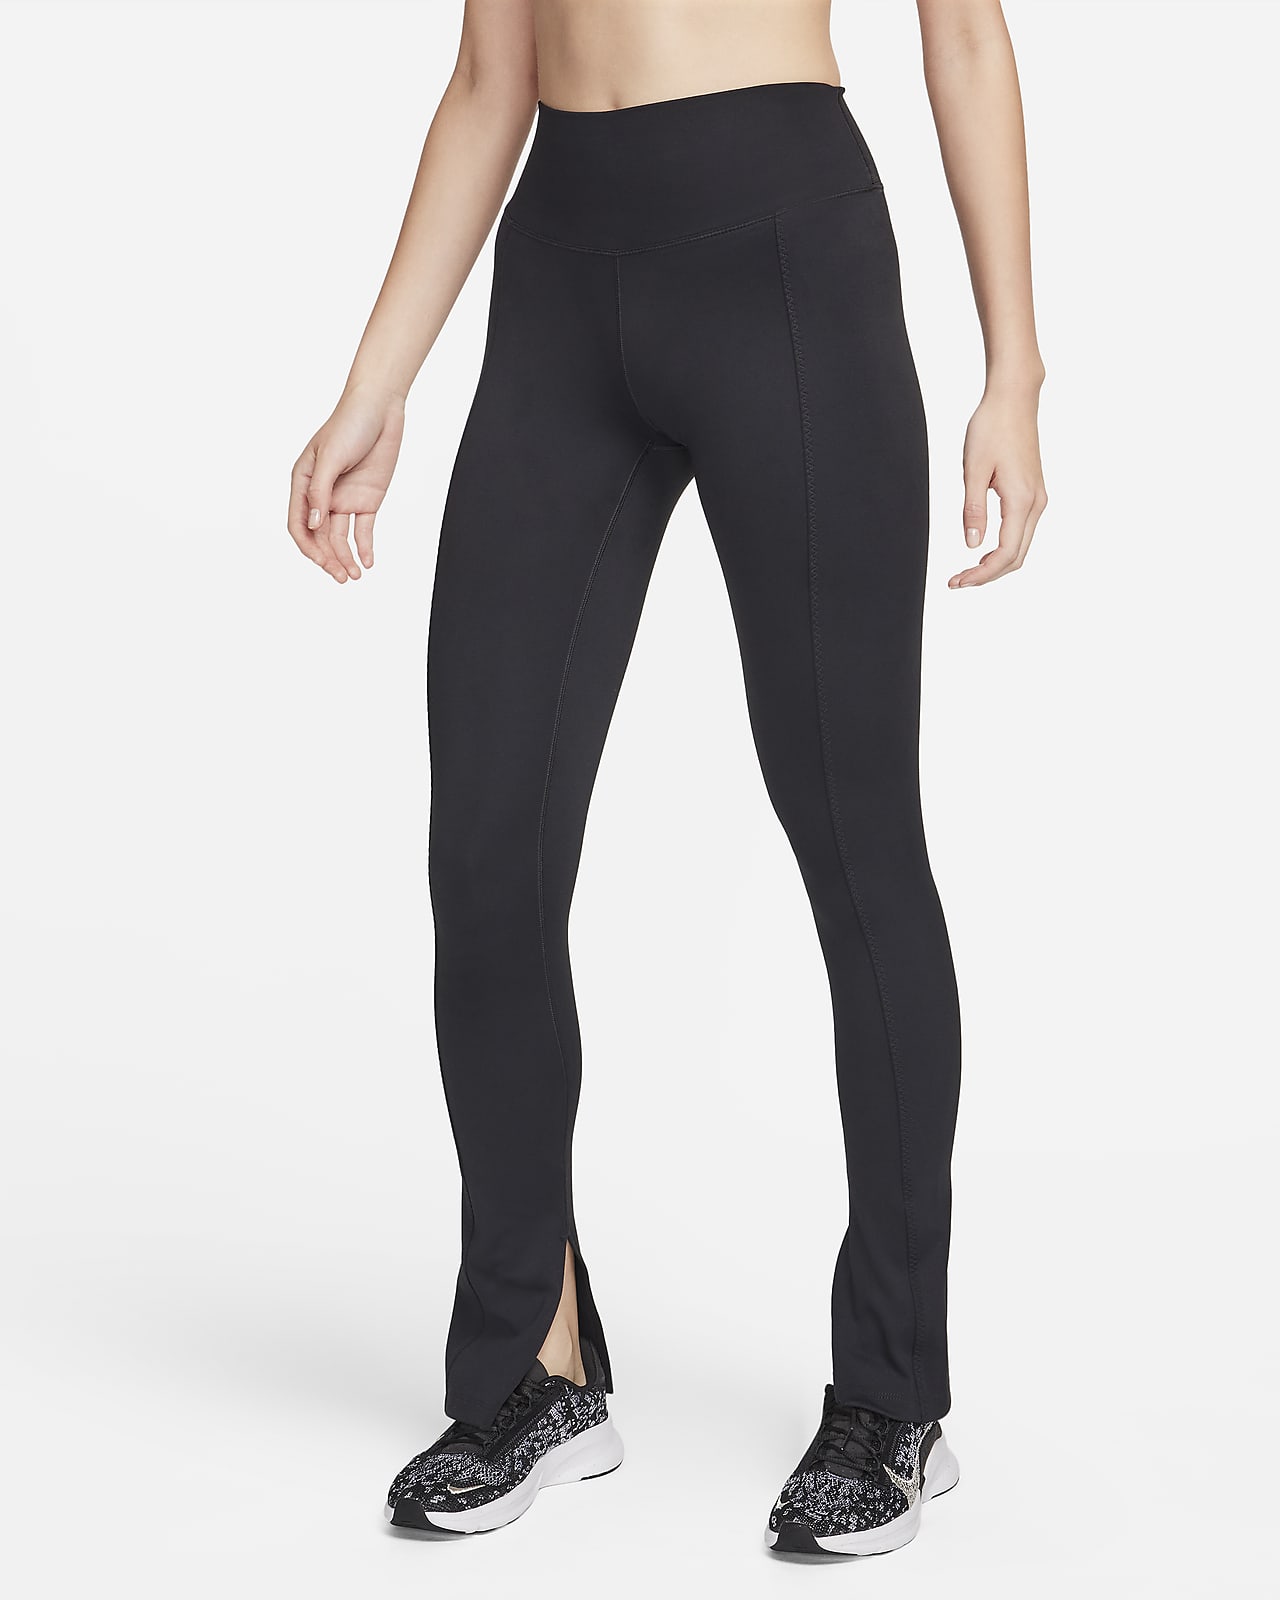 Nike One magas derekú, teljes hosszúságú, felsliccelt szegélyű női leggings